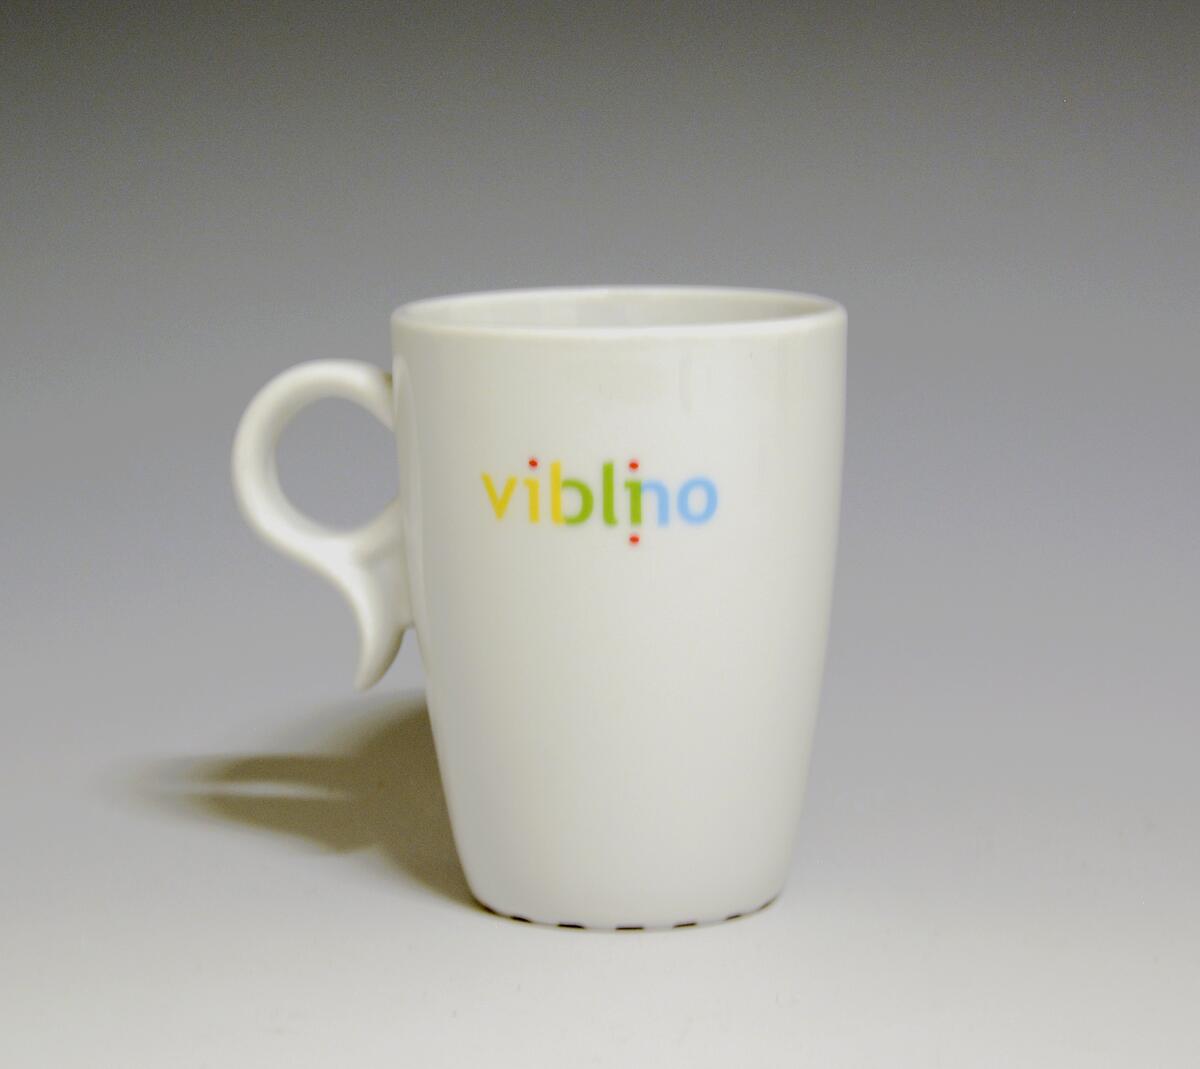 Krus av porselen med  hvit glasur. Trykkdekor med påskriften: "Vigo" i gult og sort på den ene siden, og "Viblino" i gult, rødt, grønt og blått på den andre siden.
Modell: 2731, Victor